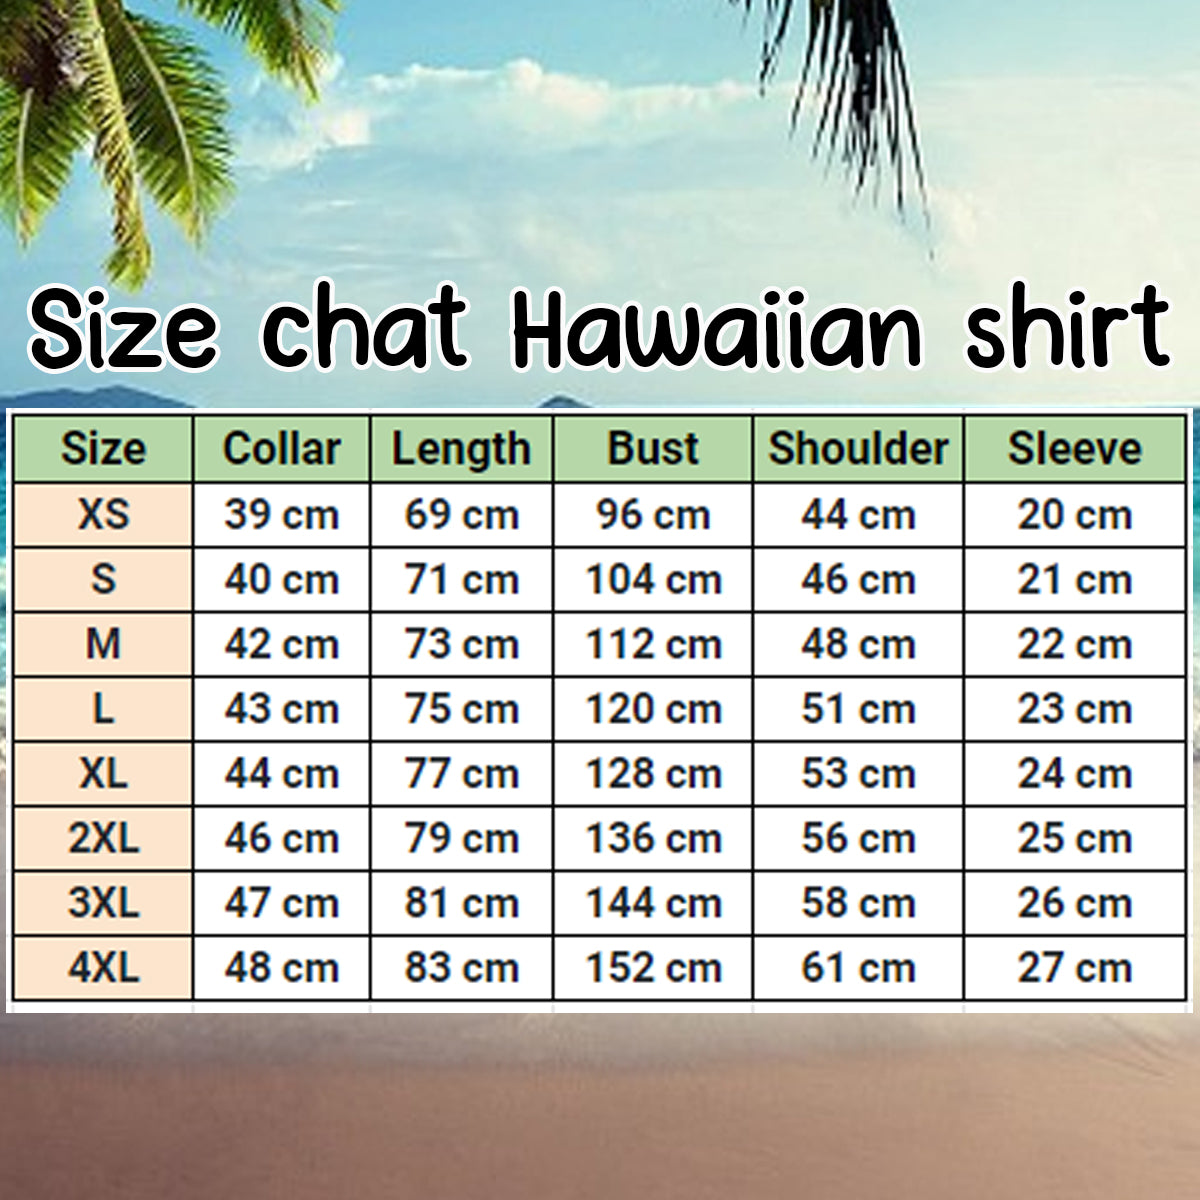 Sloth Tropical Palm Leaves Summer Vacation Gift Ideal Hawaiian Shirt